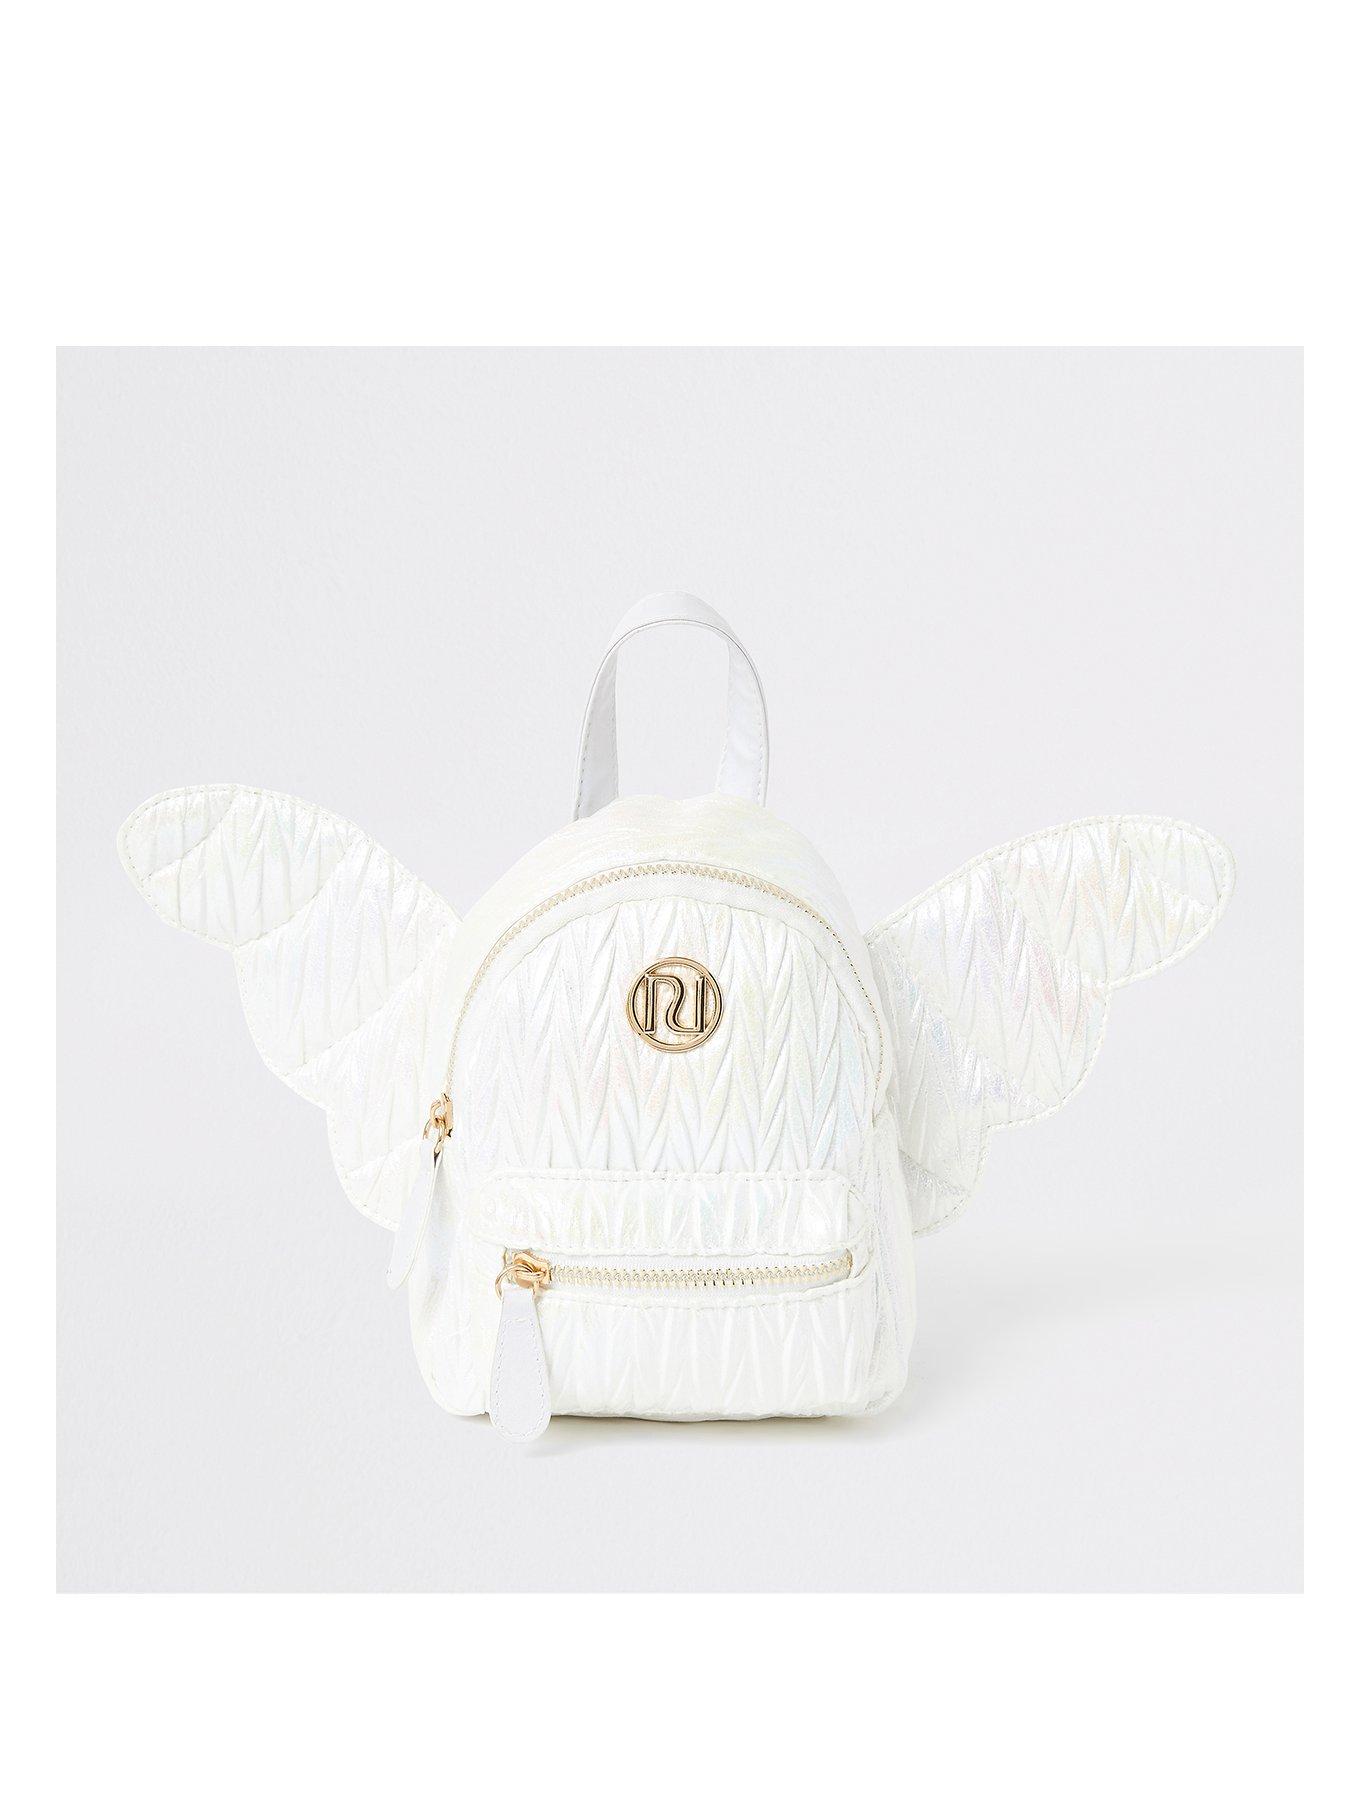 Bags Accessories Child Baby Wwwlittlewoodsirelandie - sparkling angel wings roblox angel wings code transparent